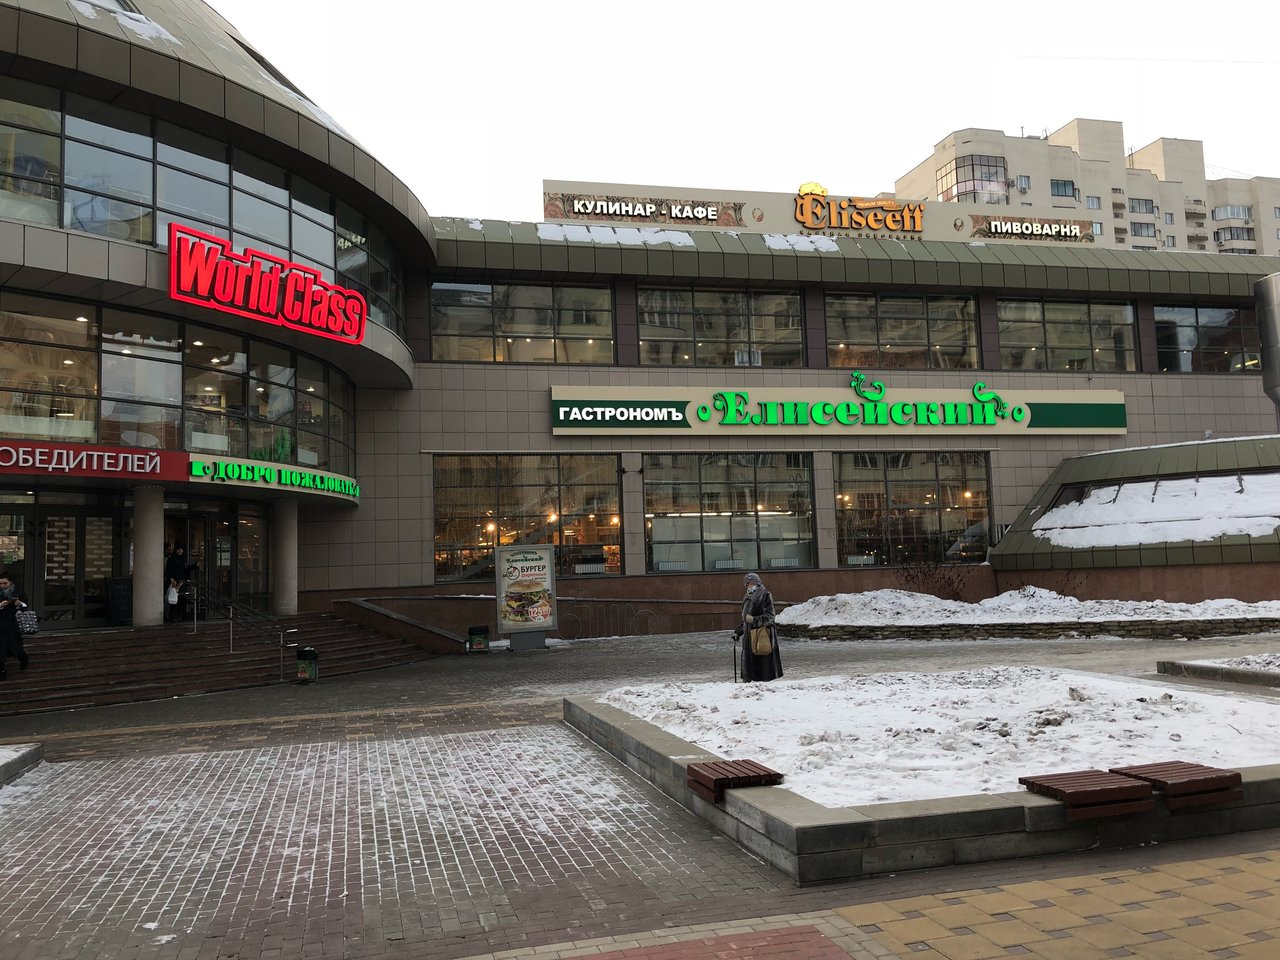 Кафе находилось на втором этаже здания на улице Красноармейской